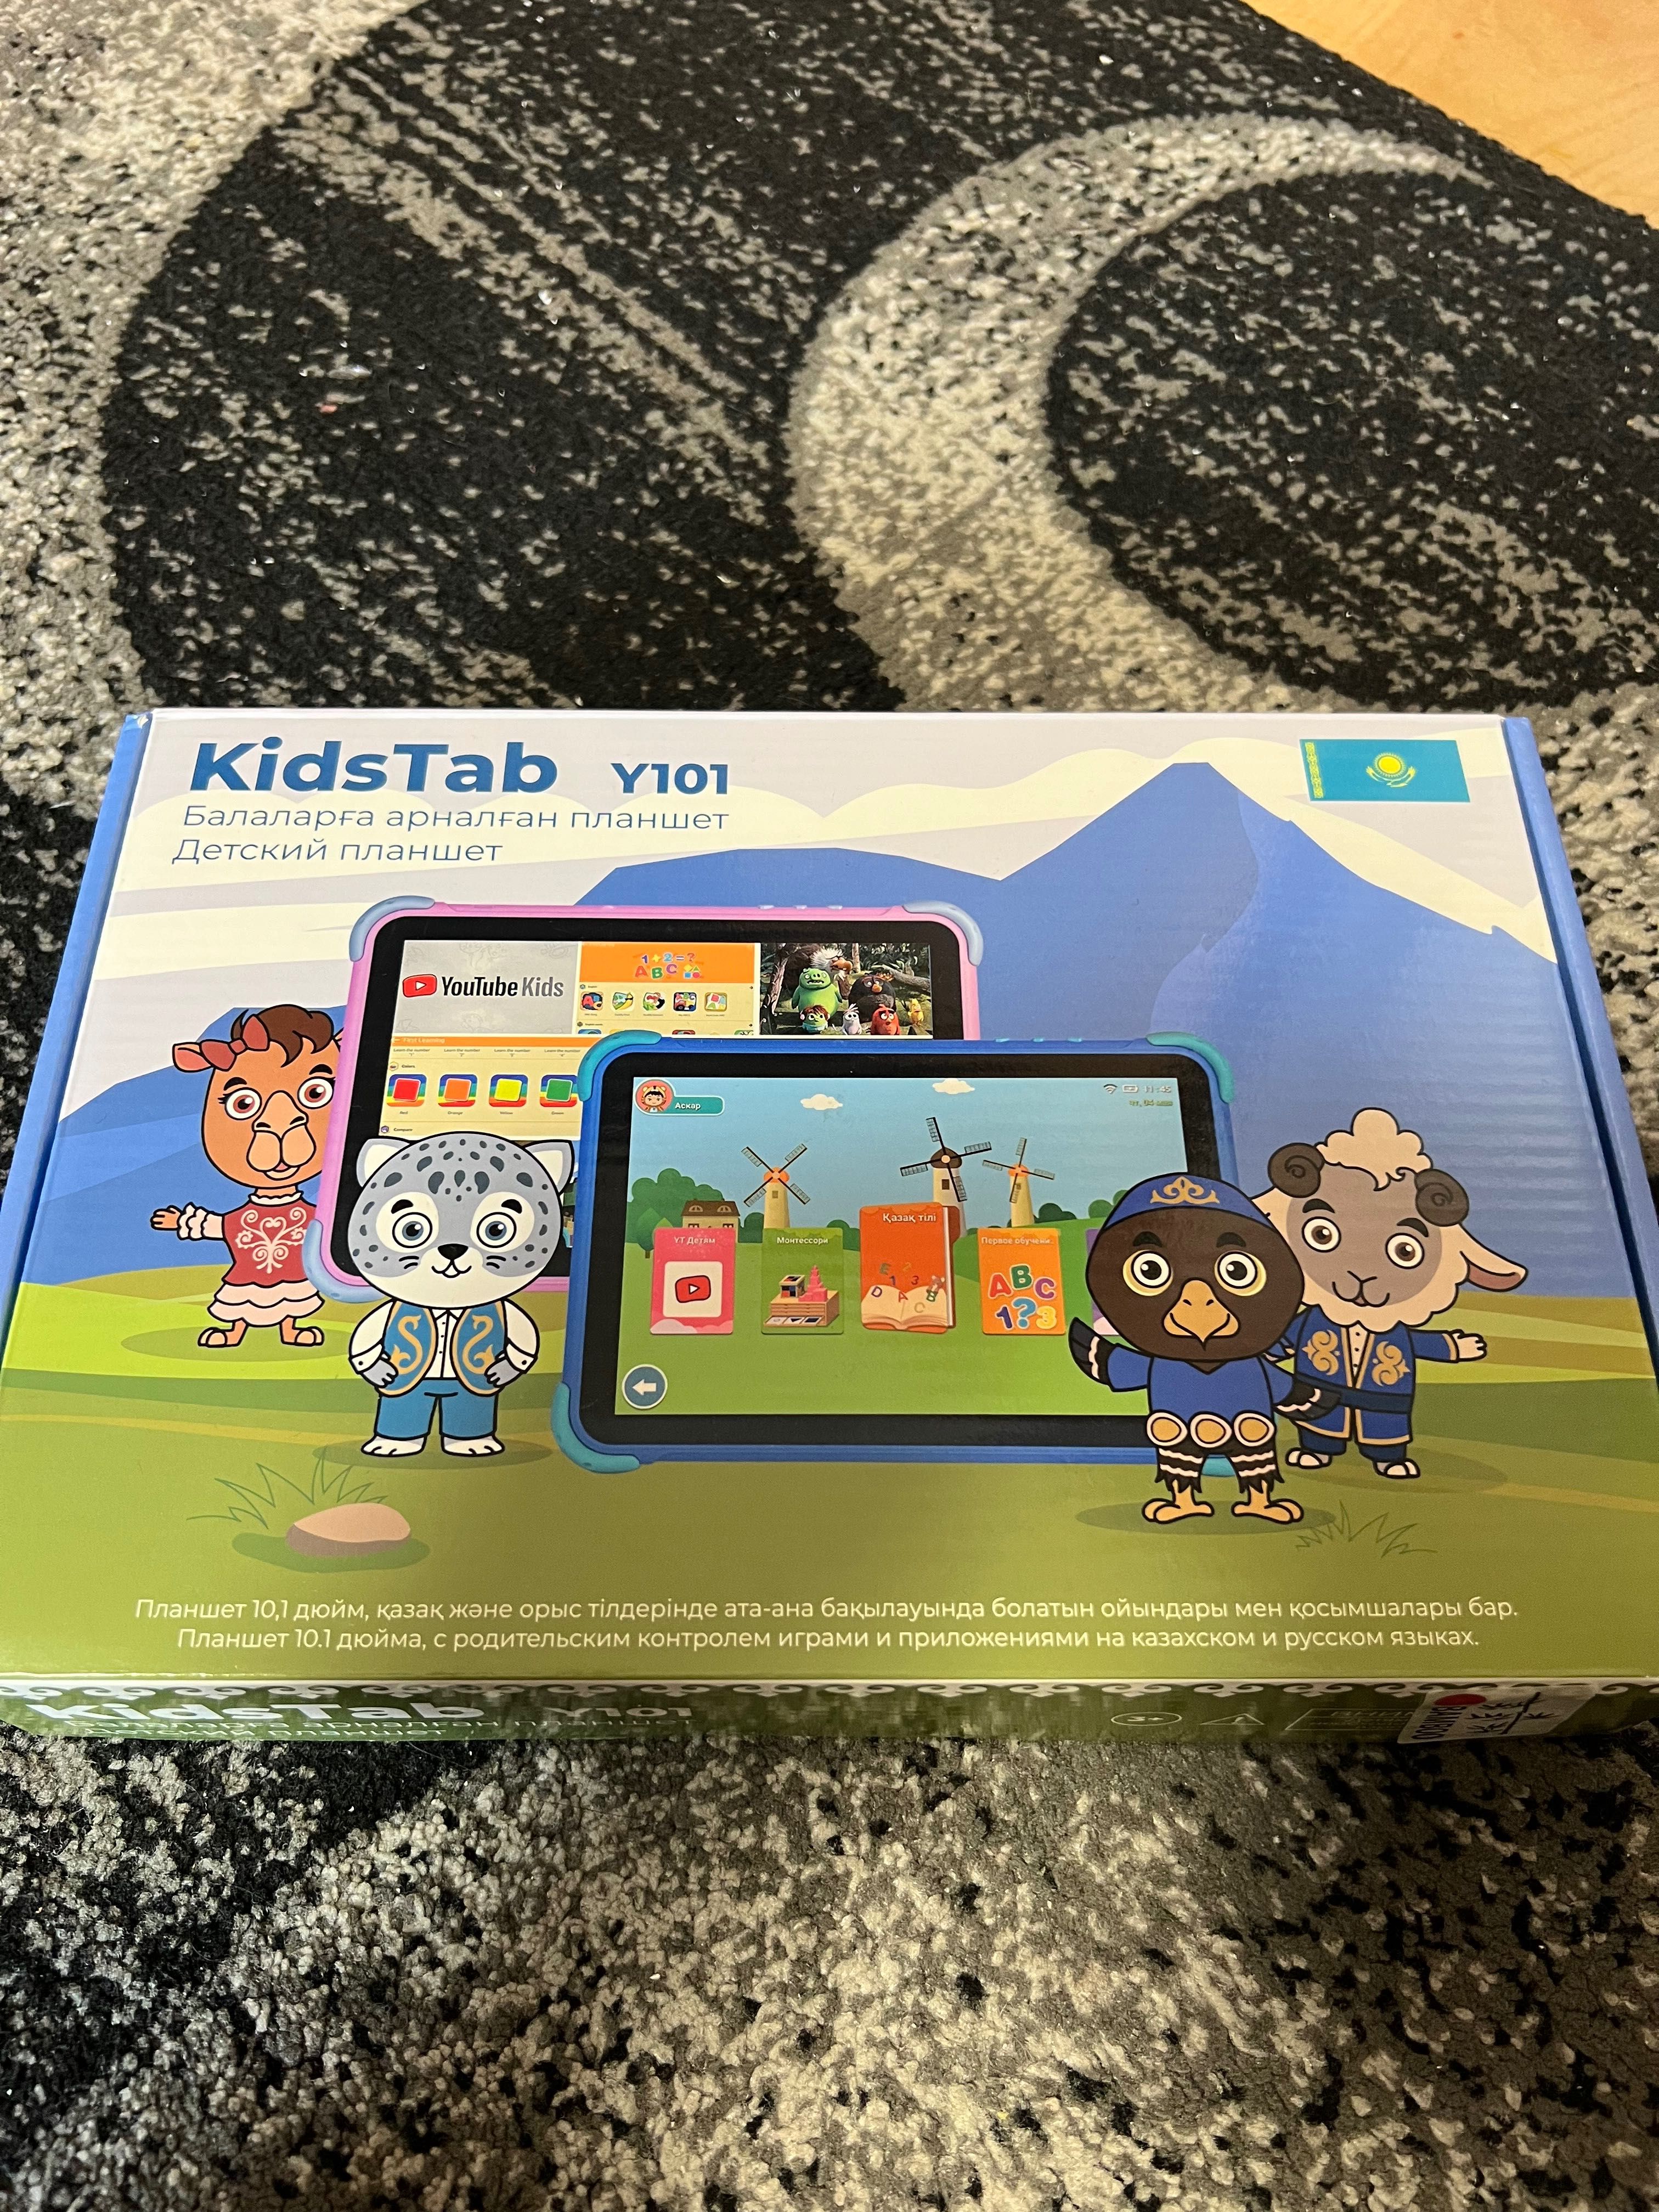 Планшет детский Android KidsTab Y101